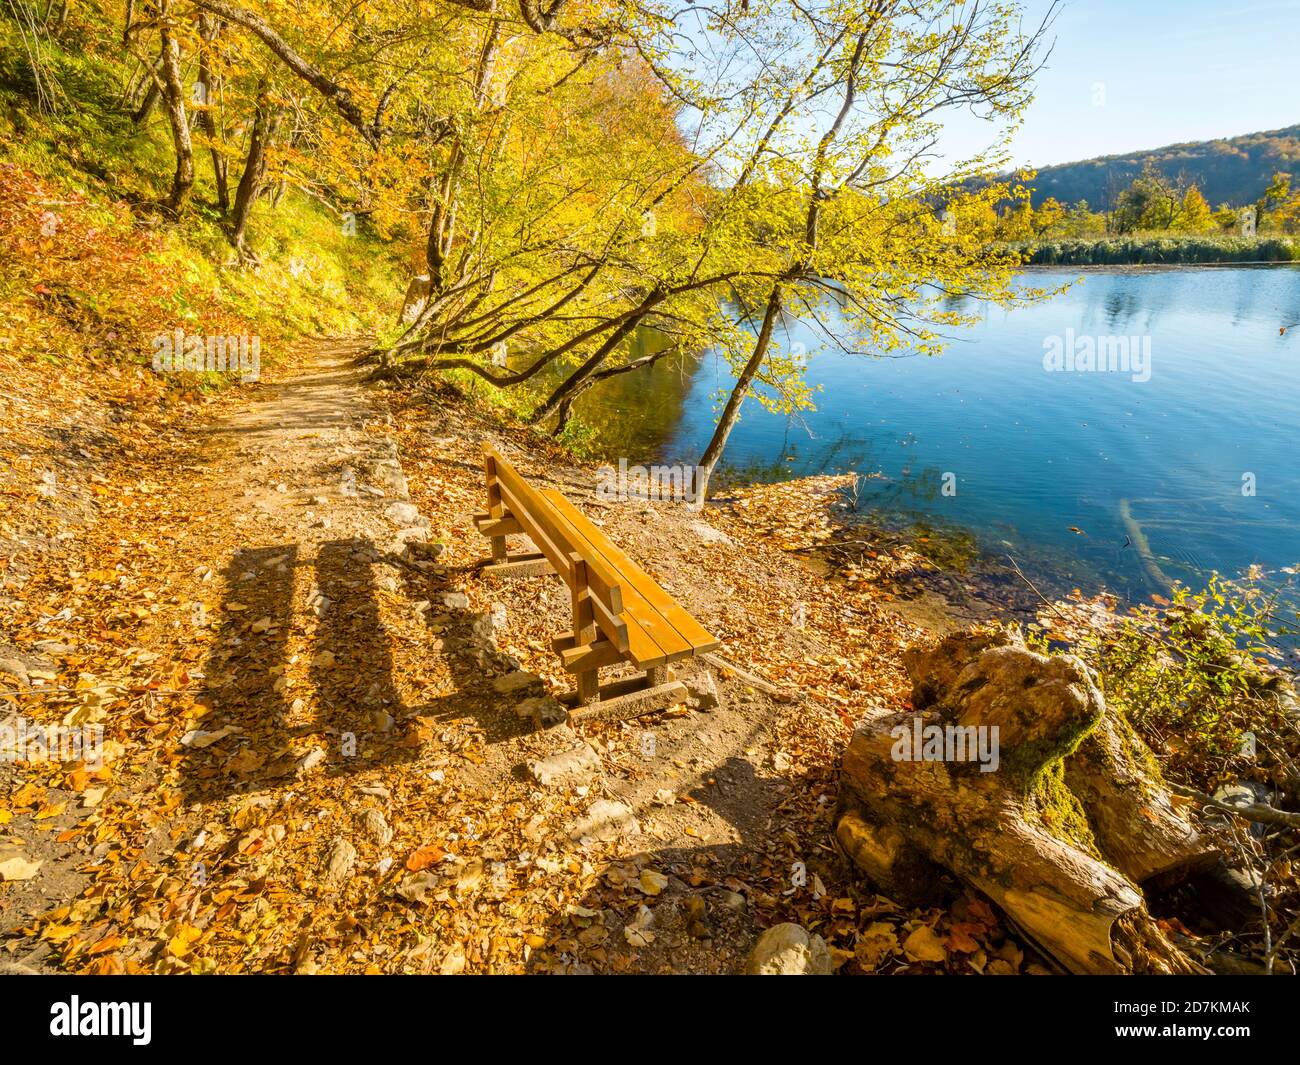 Lacs de Plitvice en Croatie Europe banc de parc en bois le matin Spectaculaire automne couleurs sentier sentier calme lac turquoise eau Banque D'Images